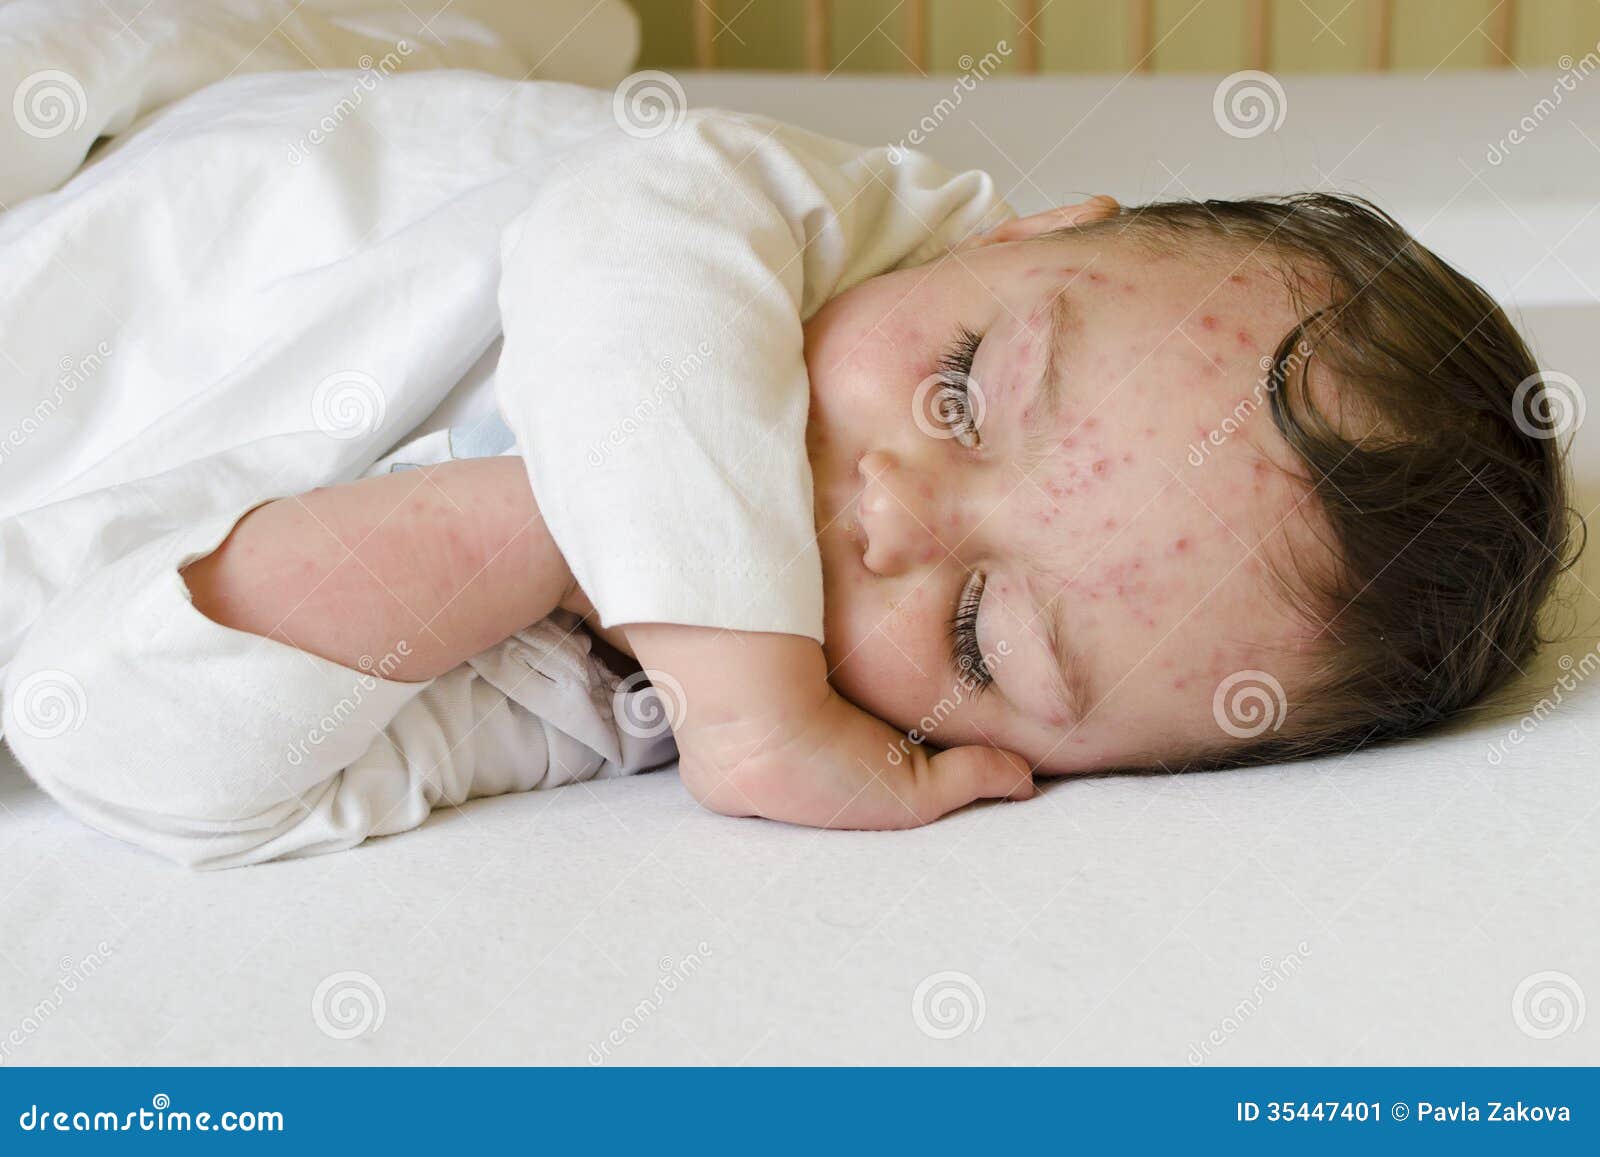 child with chicken pox